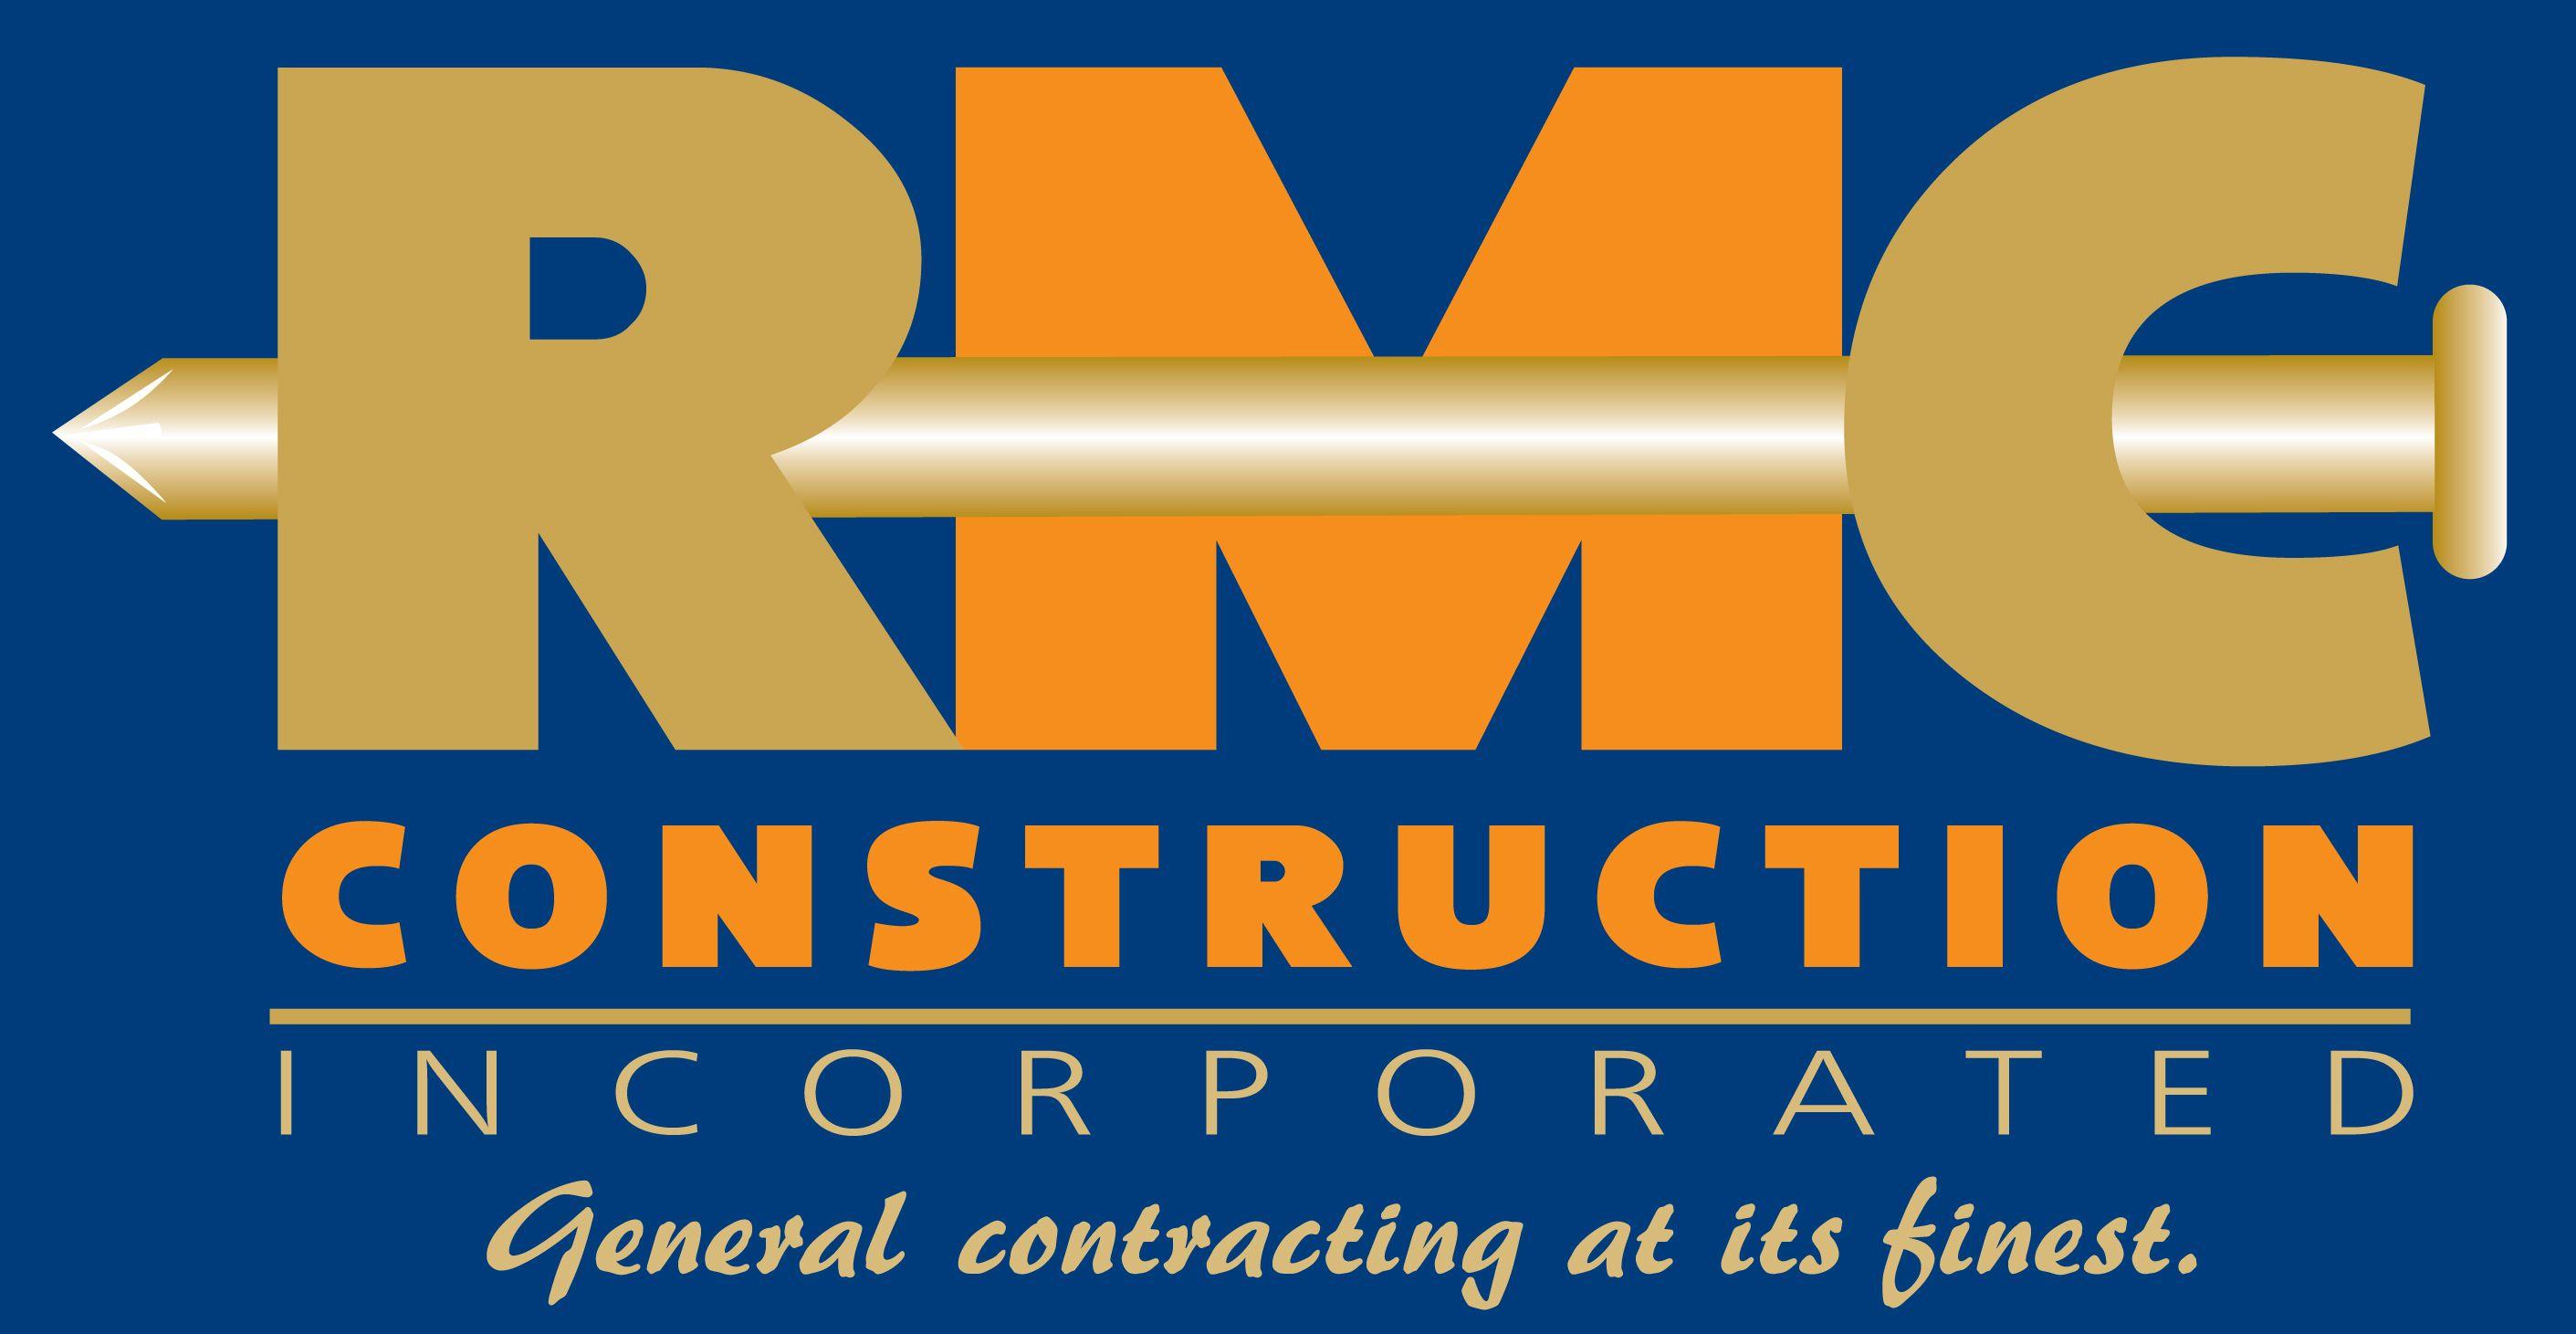 RMC Logo - Construction Company